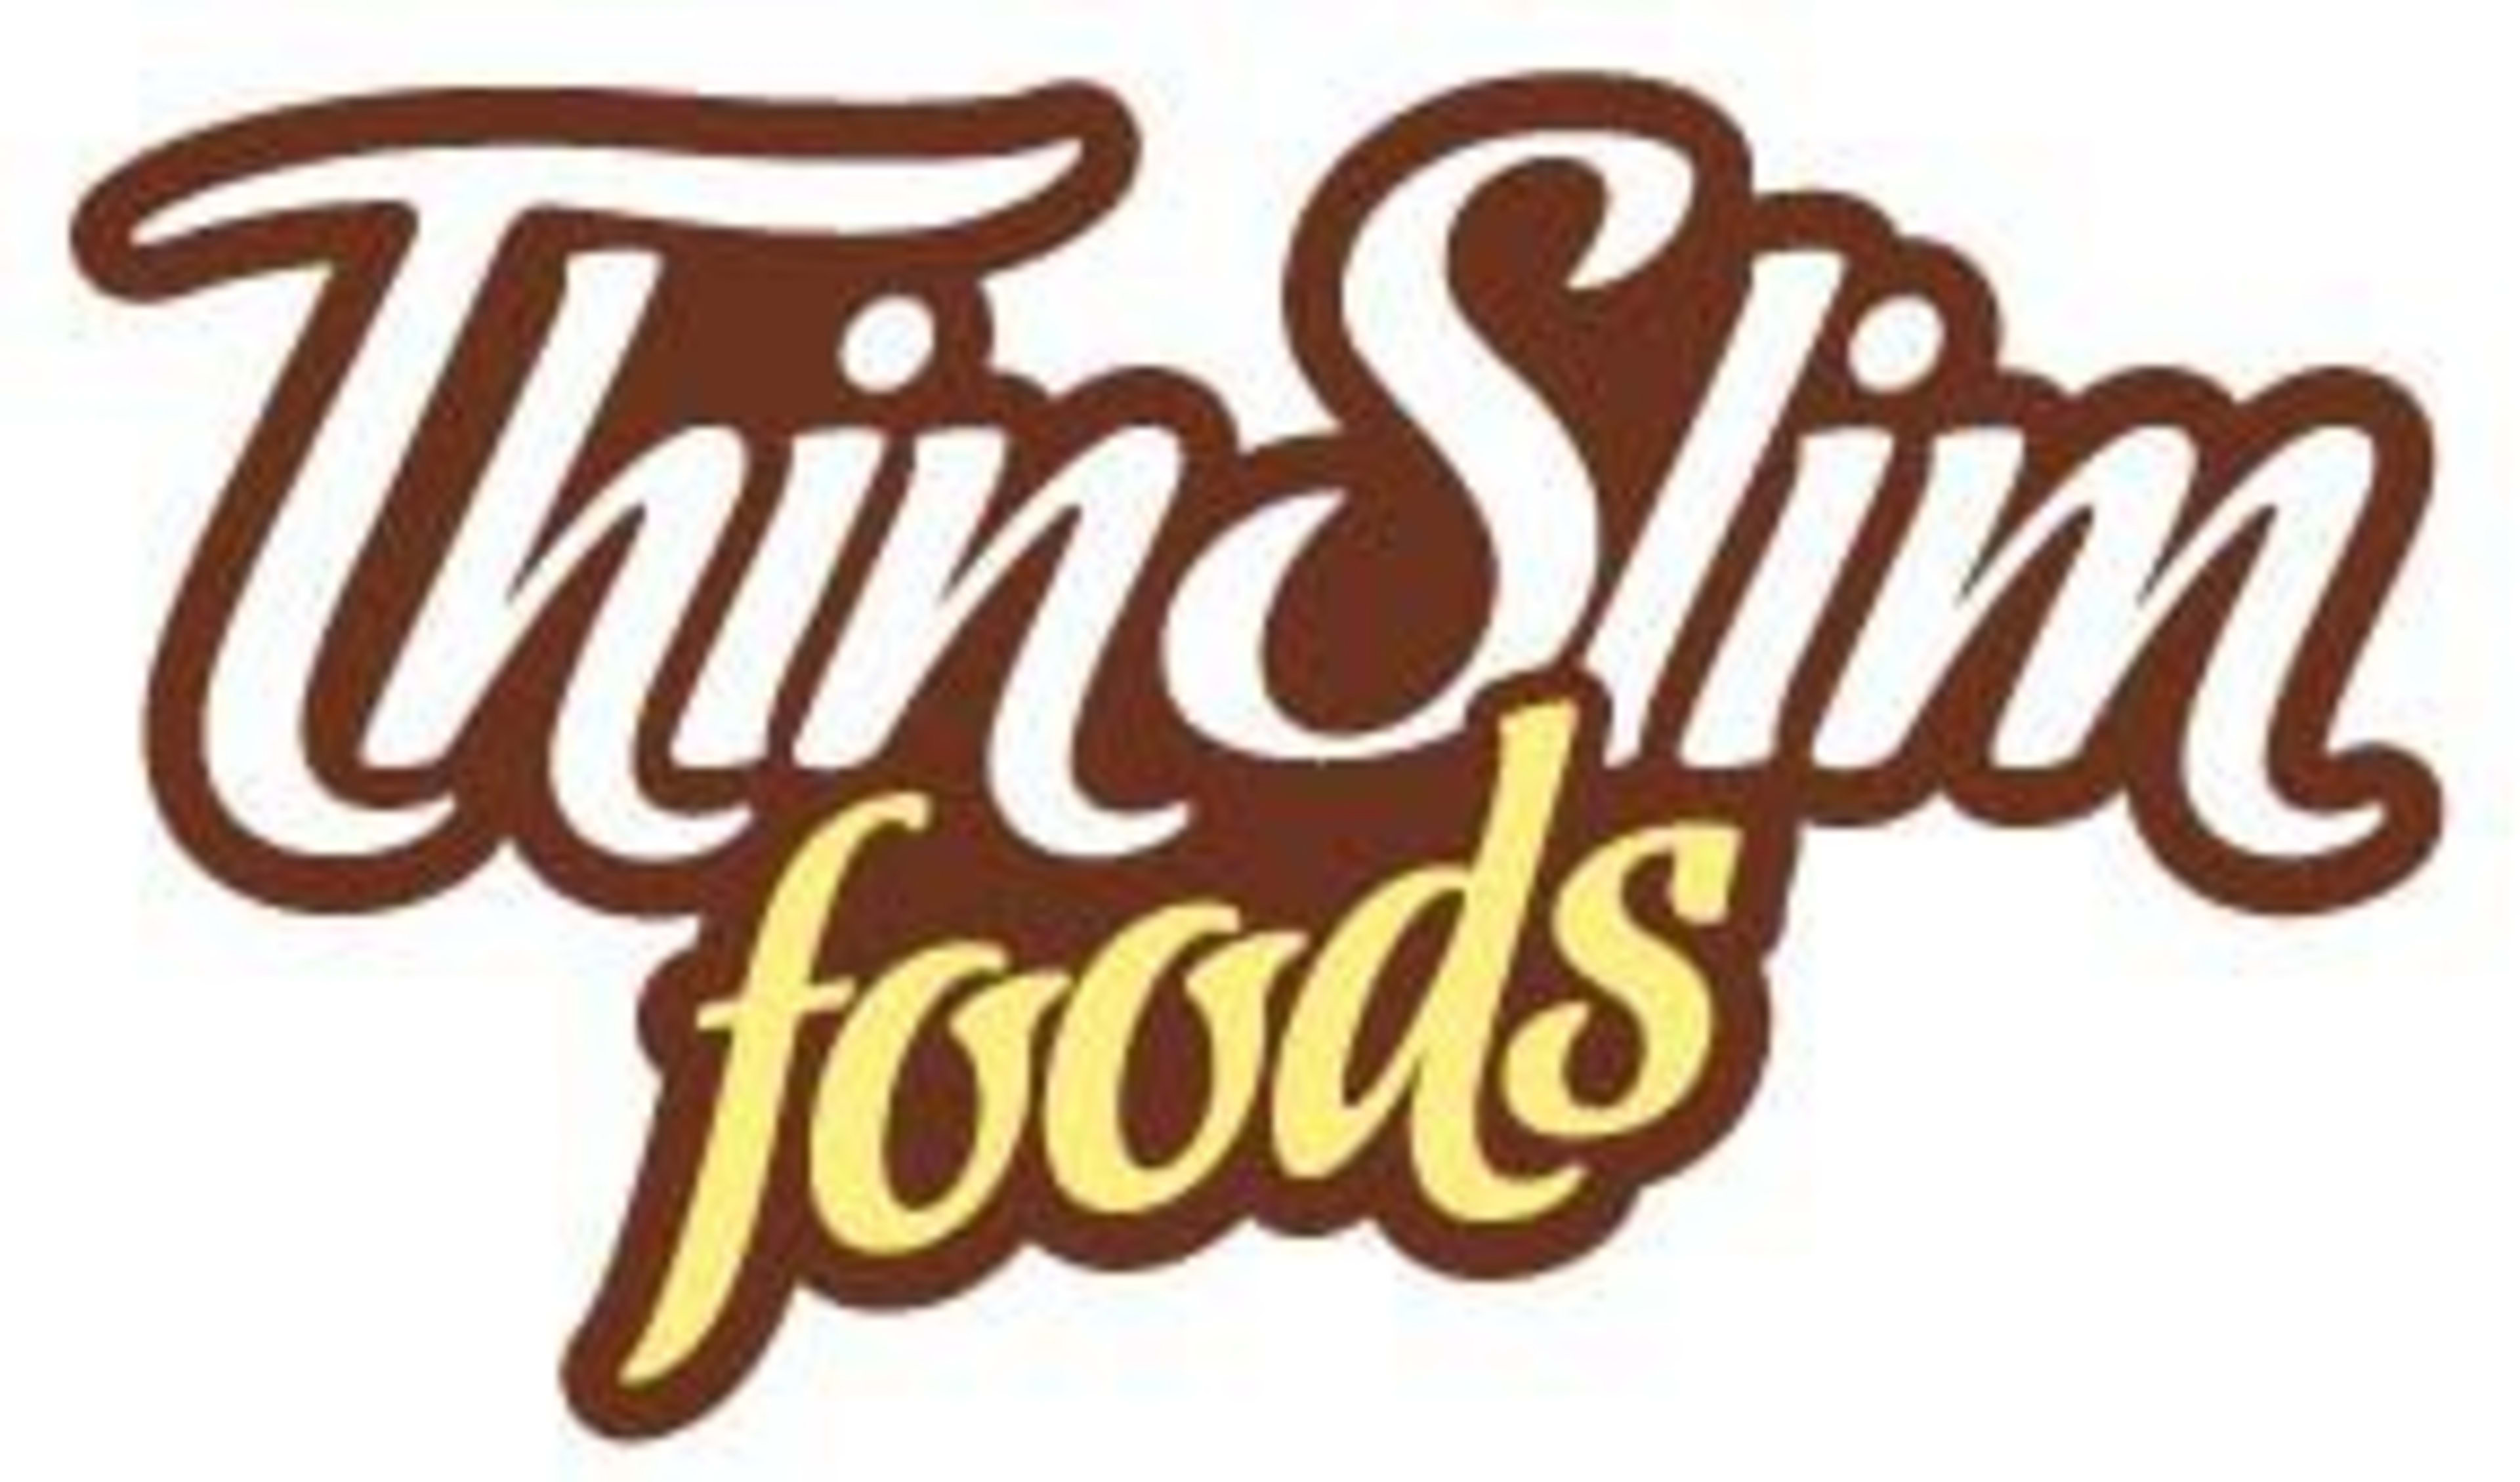 ThinSlim FoodsCode